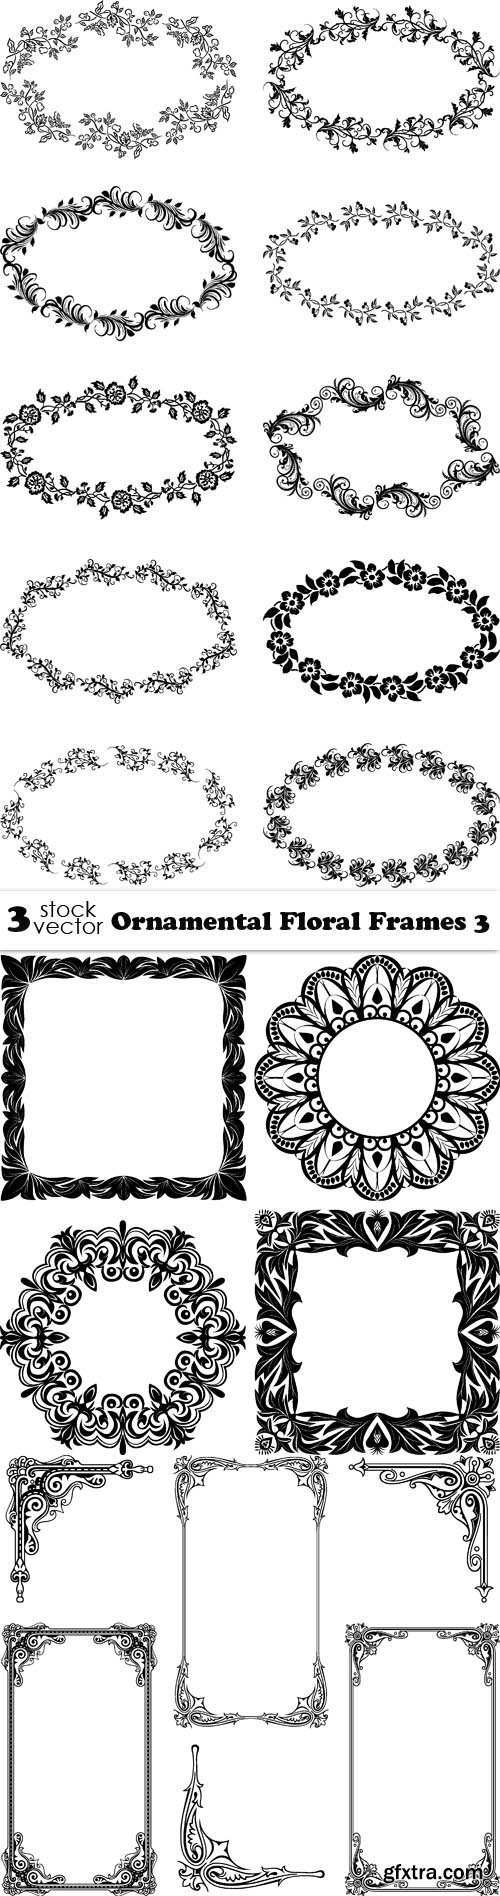 Vectors - Ornamental Floral Frames 3